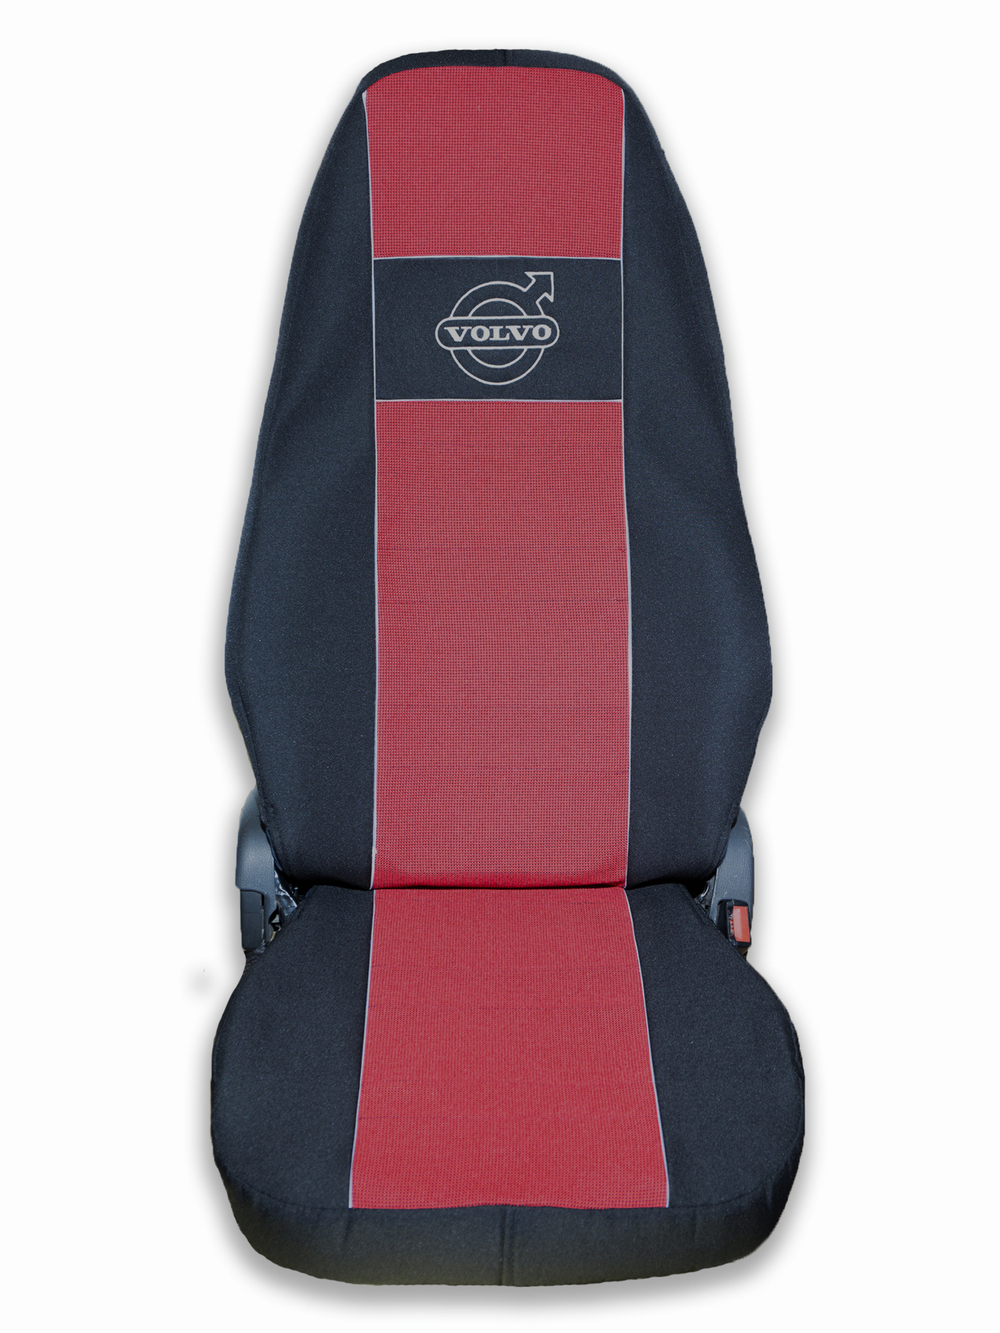 Чехлы VOLVO FM после 2008 года: 2 высоких сиденья, ремень у водителя из сиденья, у пассажира - от стоек кабины (один вырез на чехлах) (полиэфир, черный, красная вставка)